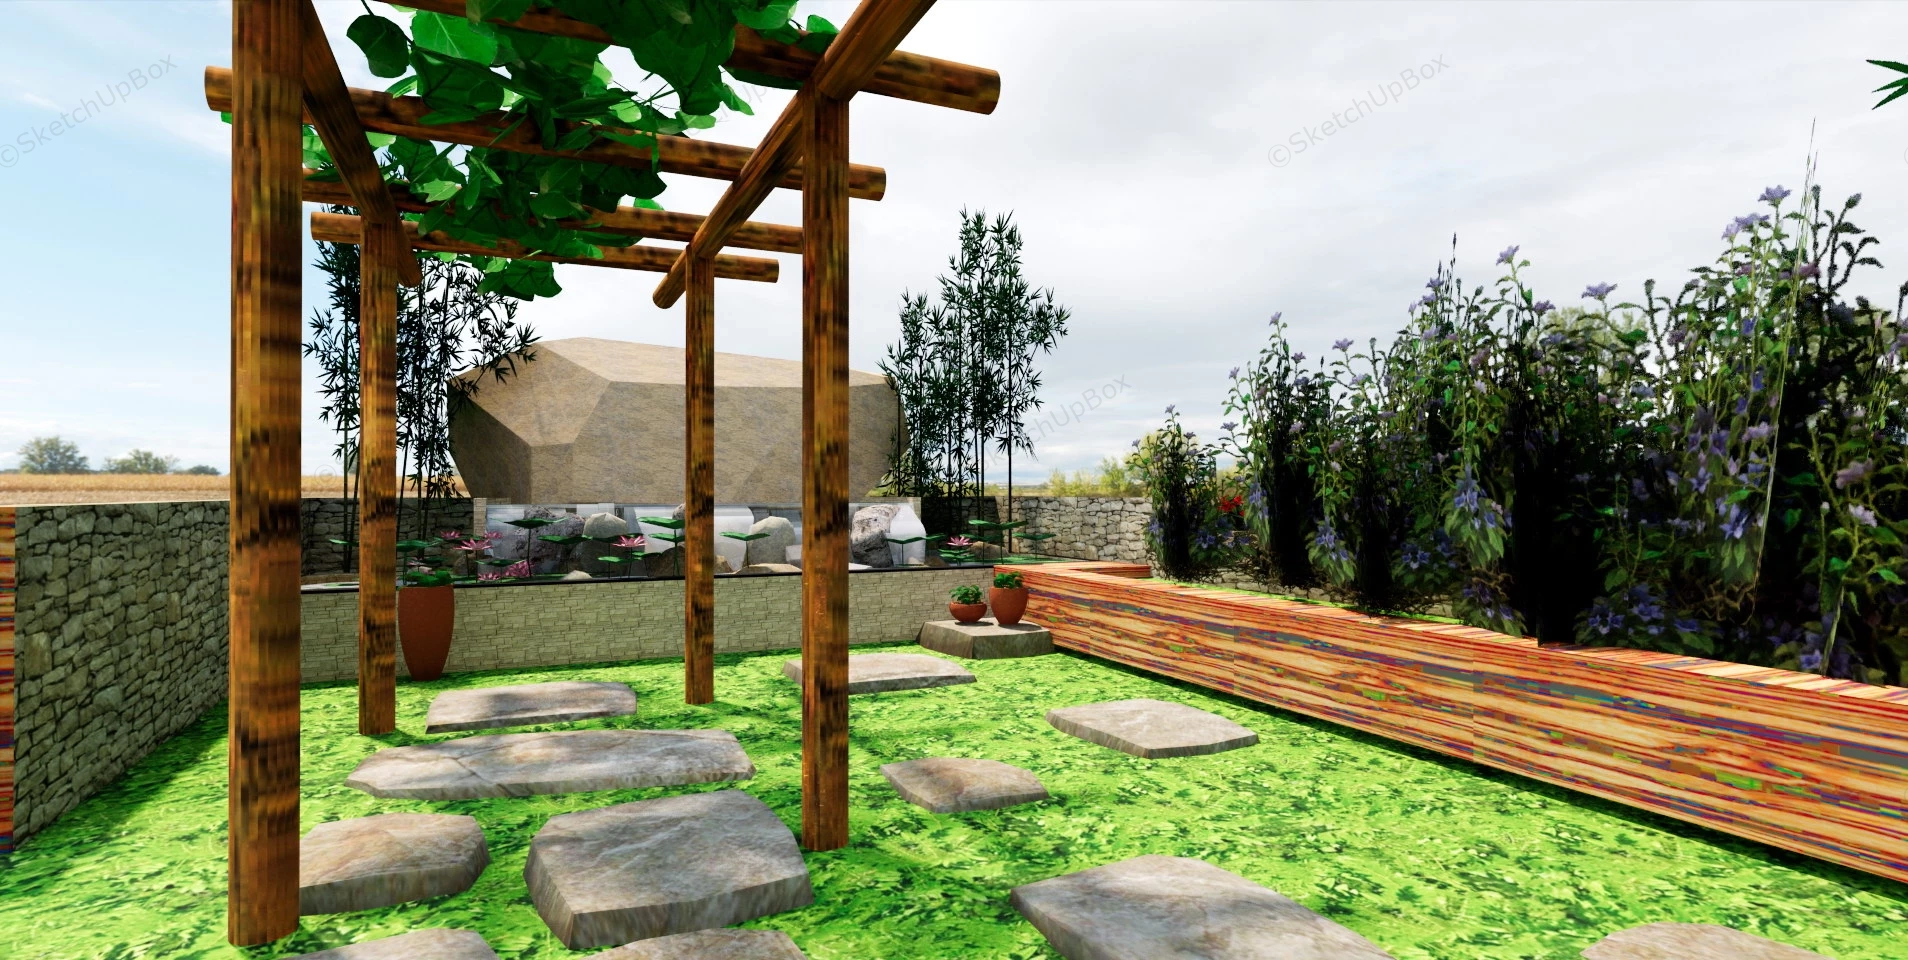 Rustic Backyard Garden Design Idea sketchup model preview - SketchupBox